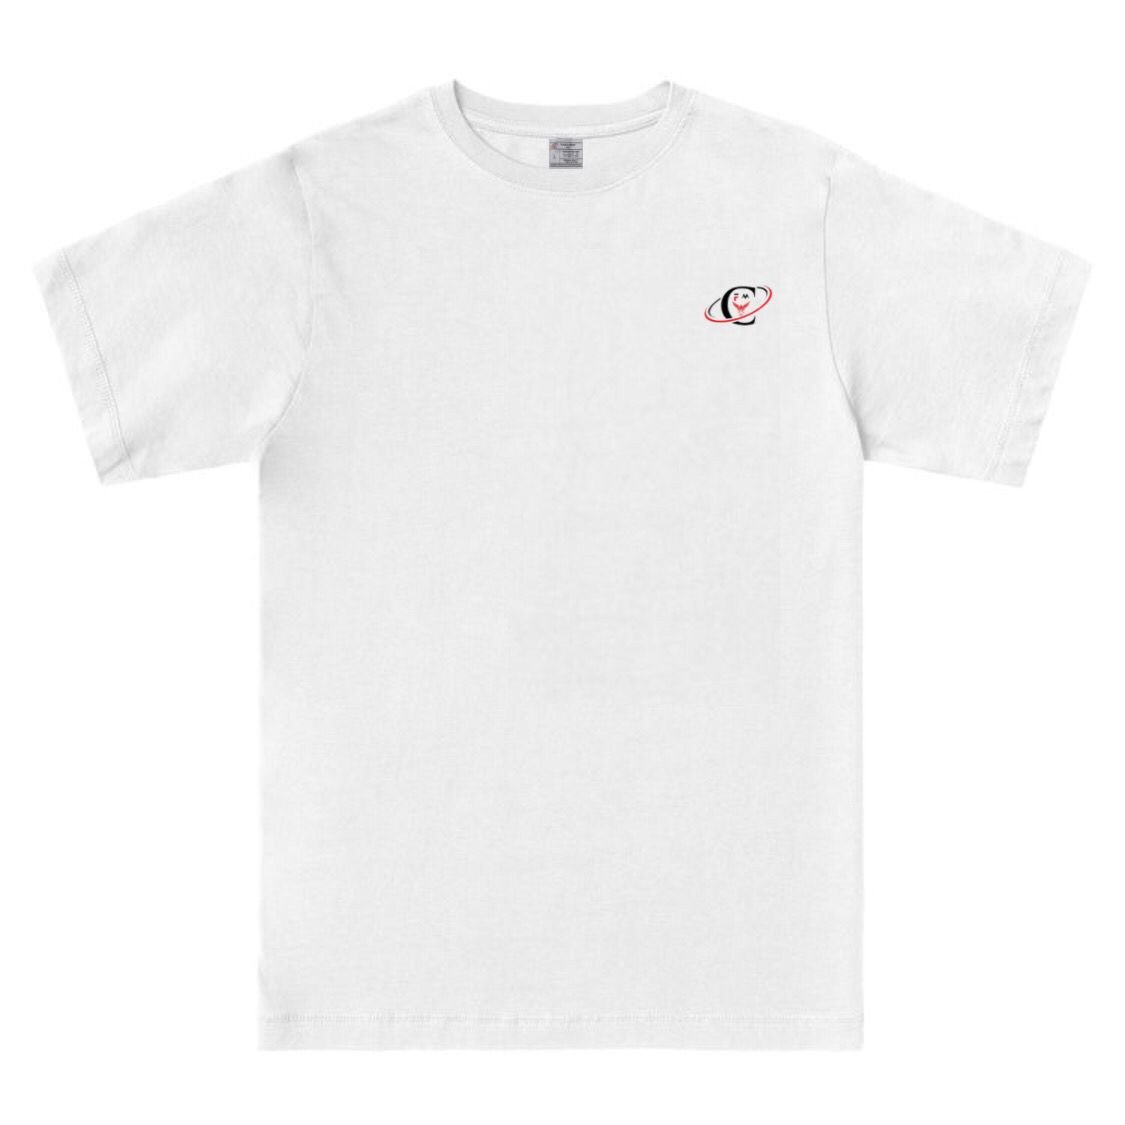 FM Premium Cotton T-Shirt White